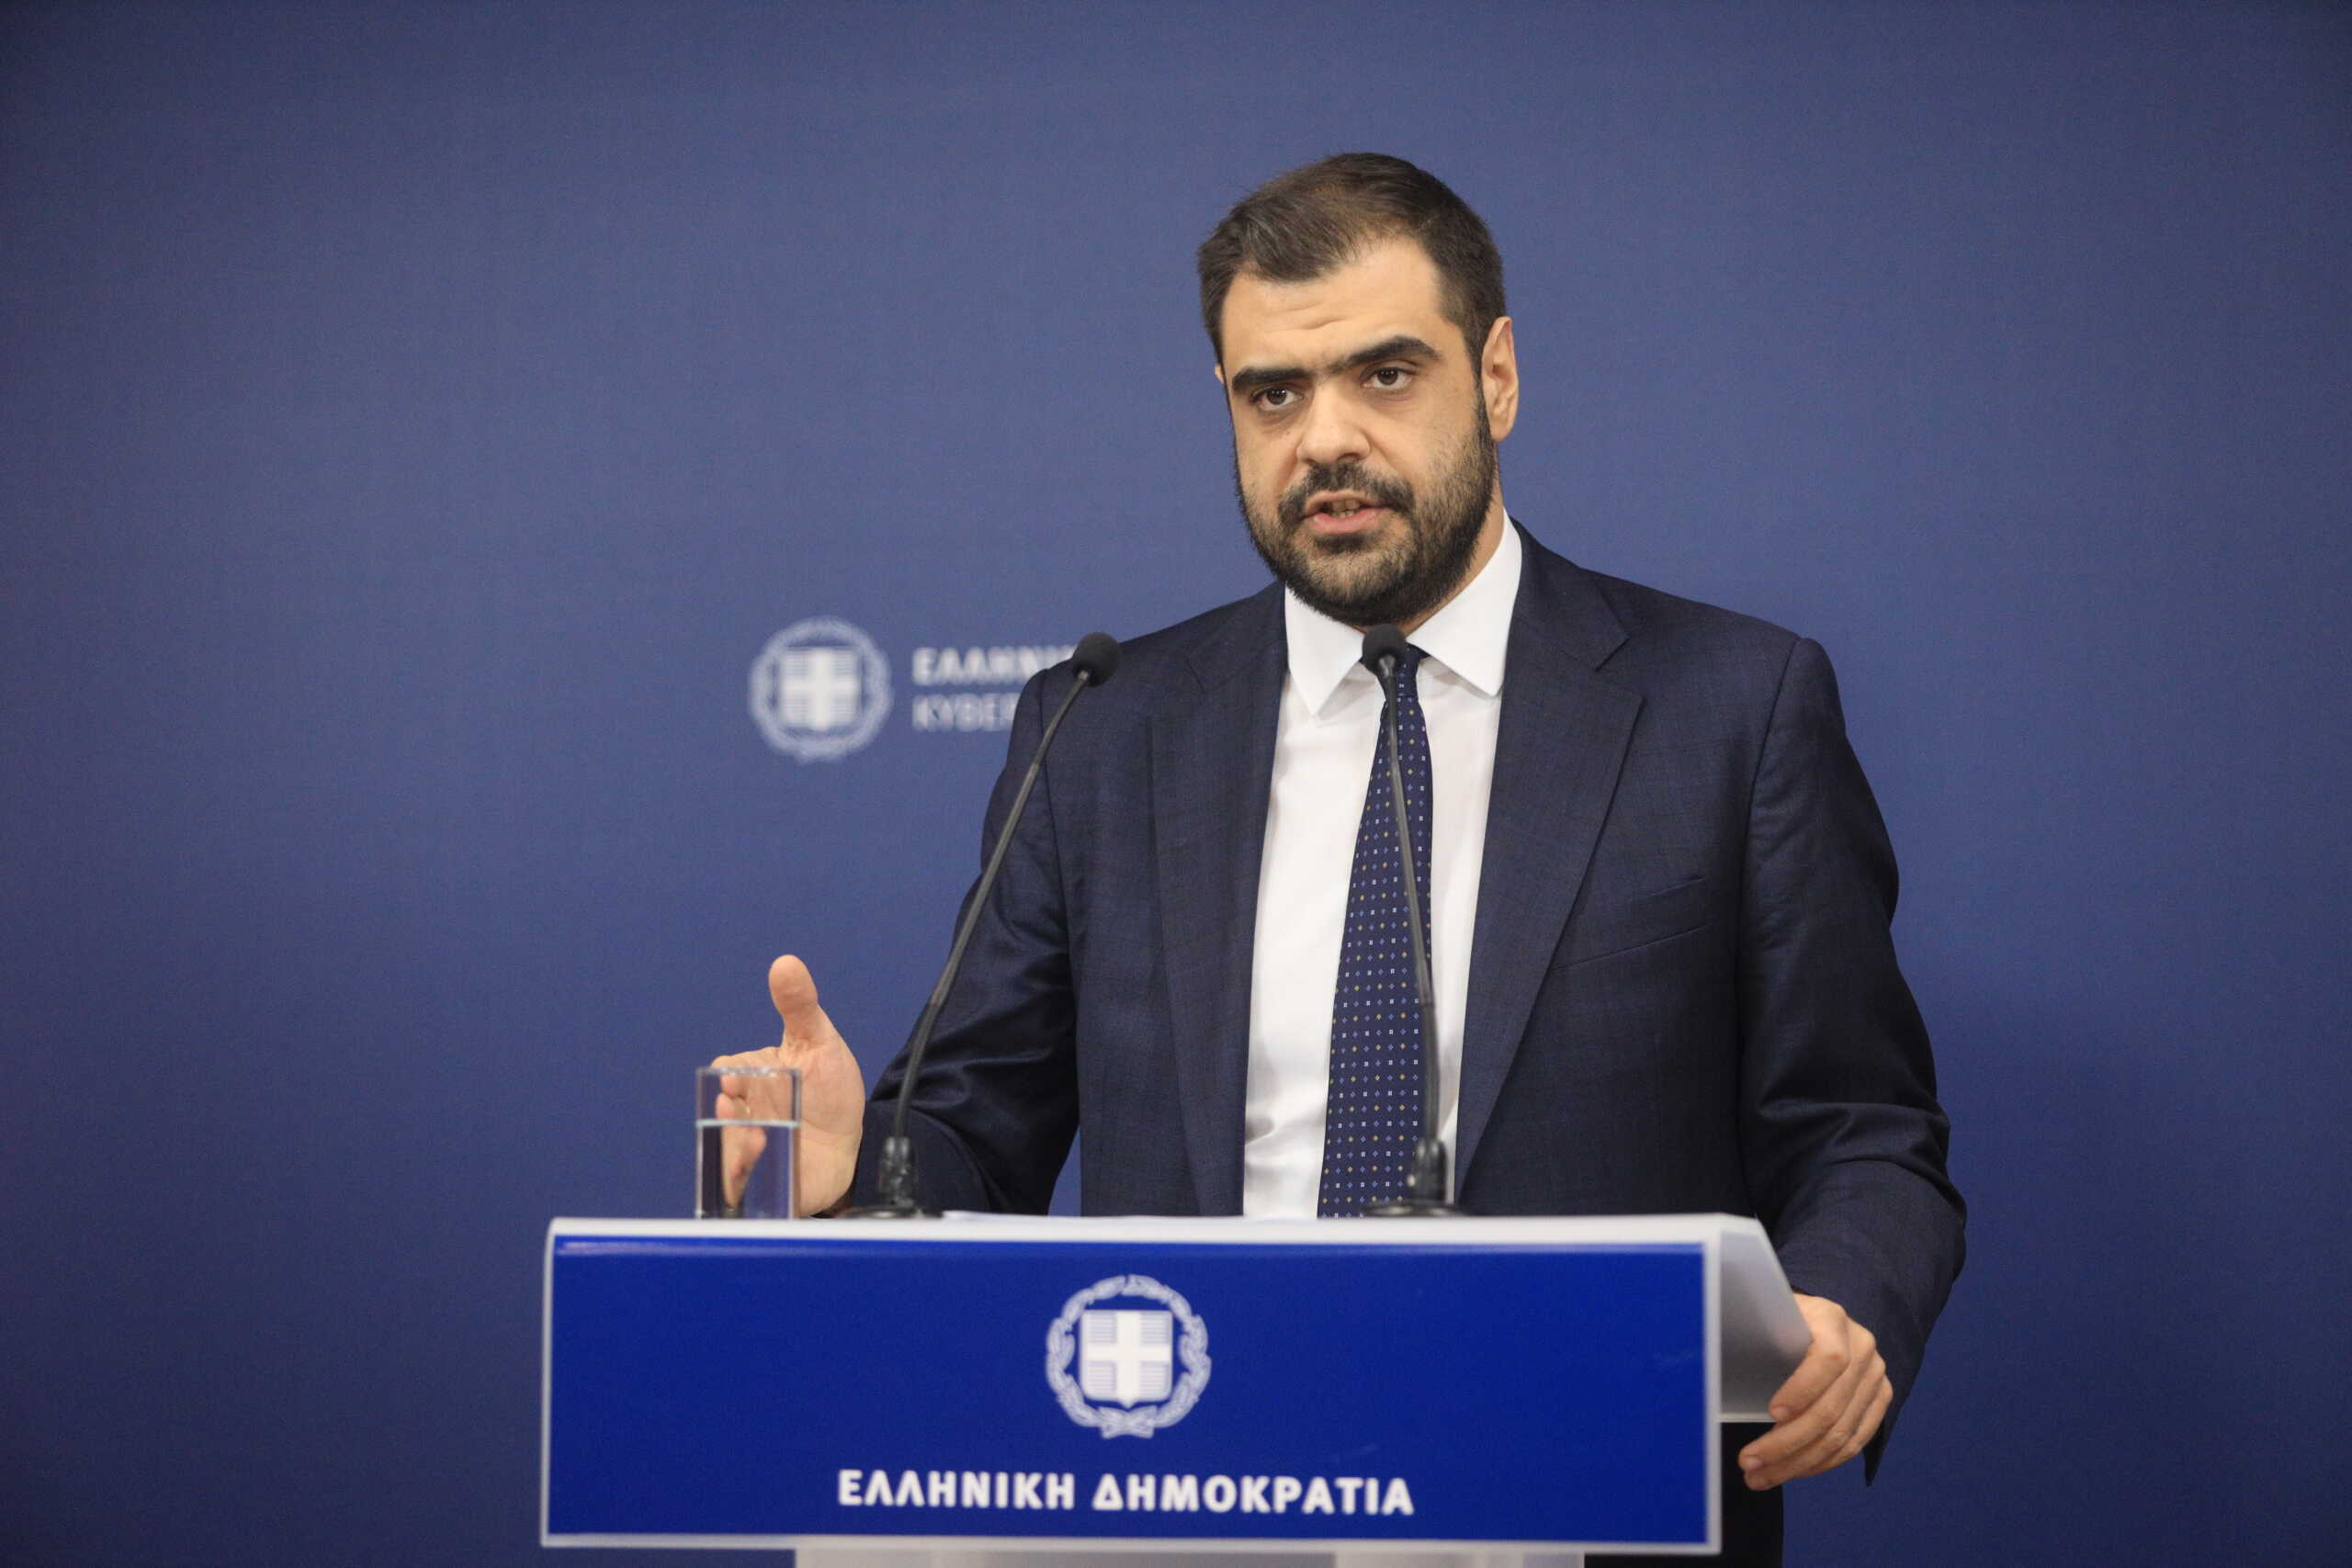 Μαρινάκης στο Live News για ΣΥΡΙΖΑ: «Έχουμε απέναντί μας να αντιμετωπίσουμε μία επιθεώρηση»